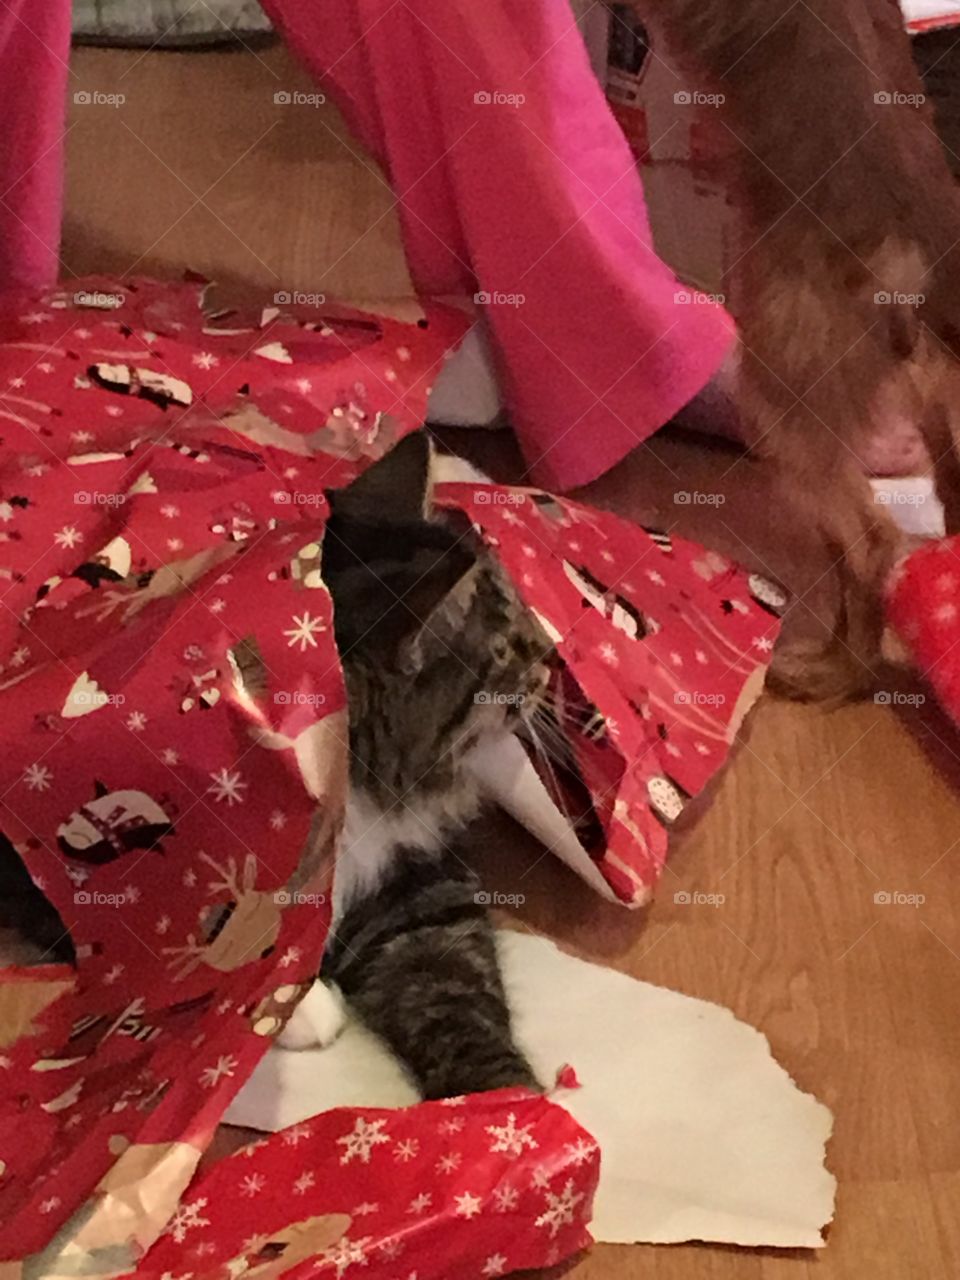 Kitty fun at Christmas